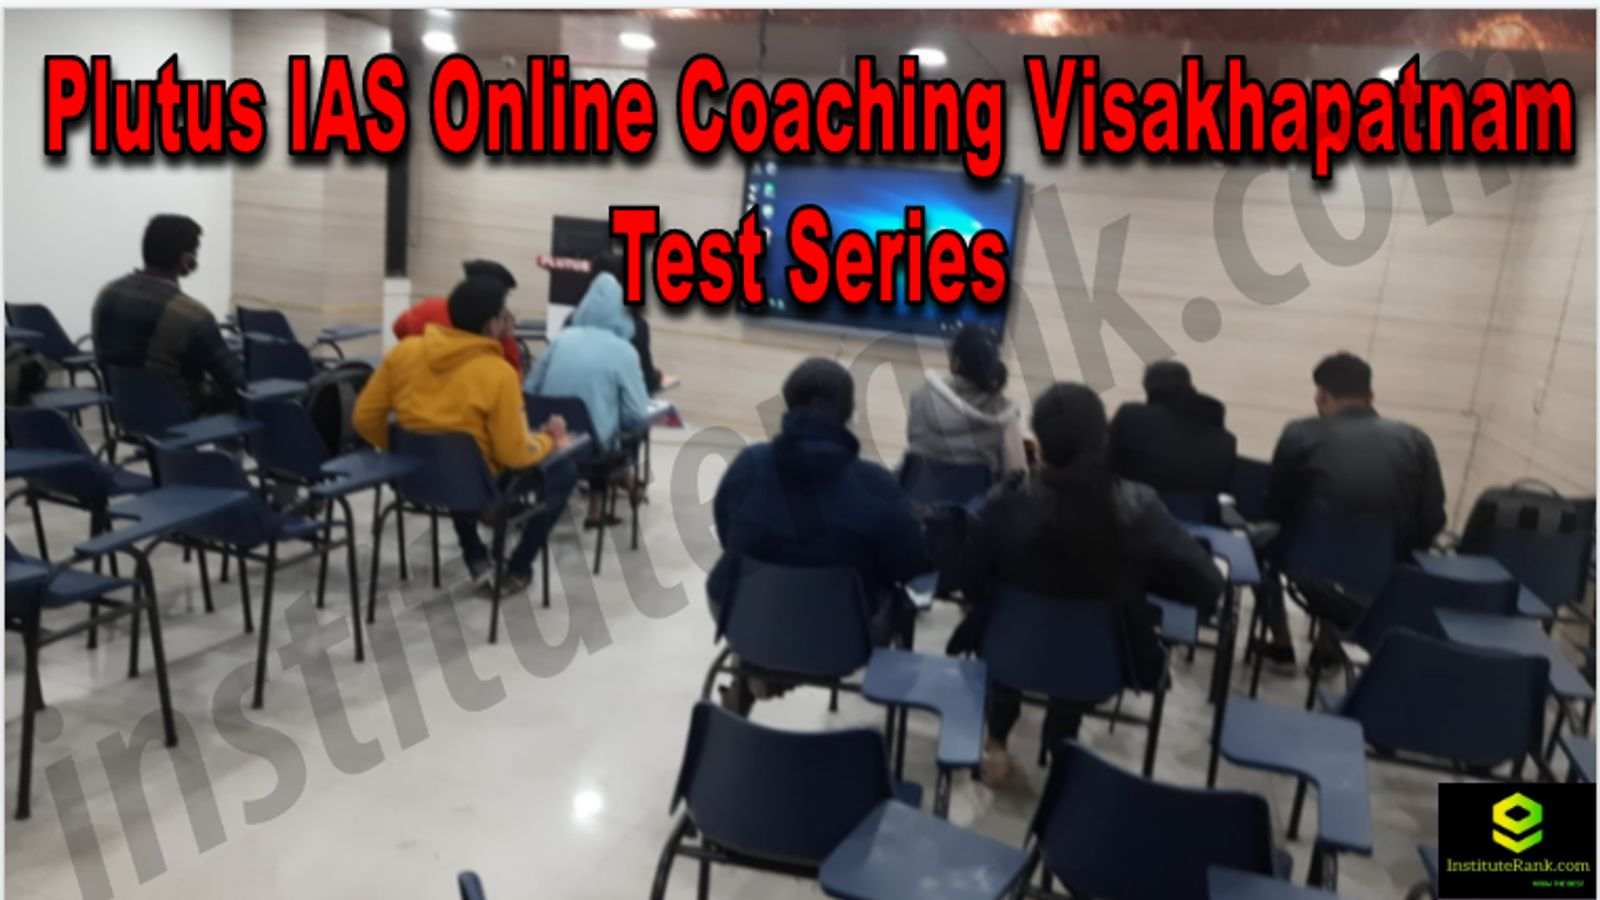 Plutus IAS Online Coaching Visakhapatnam Reviews Test Series